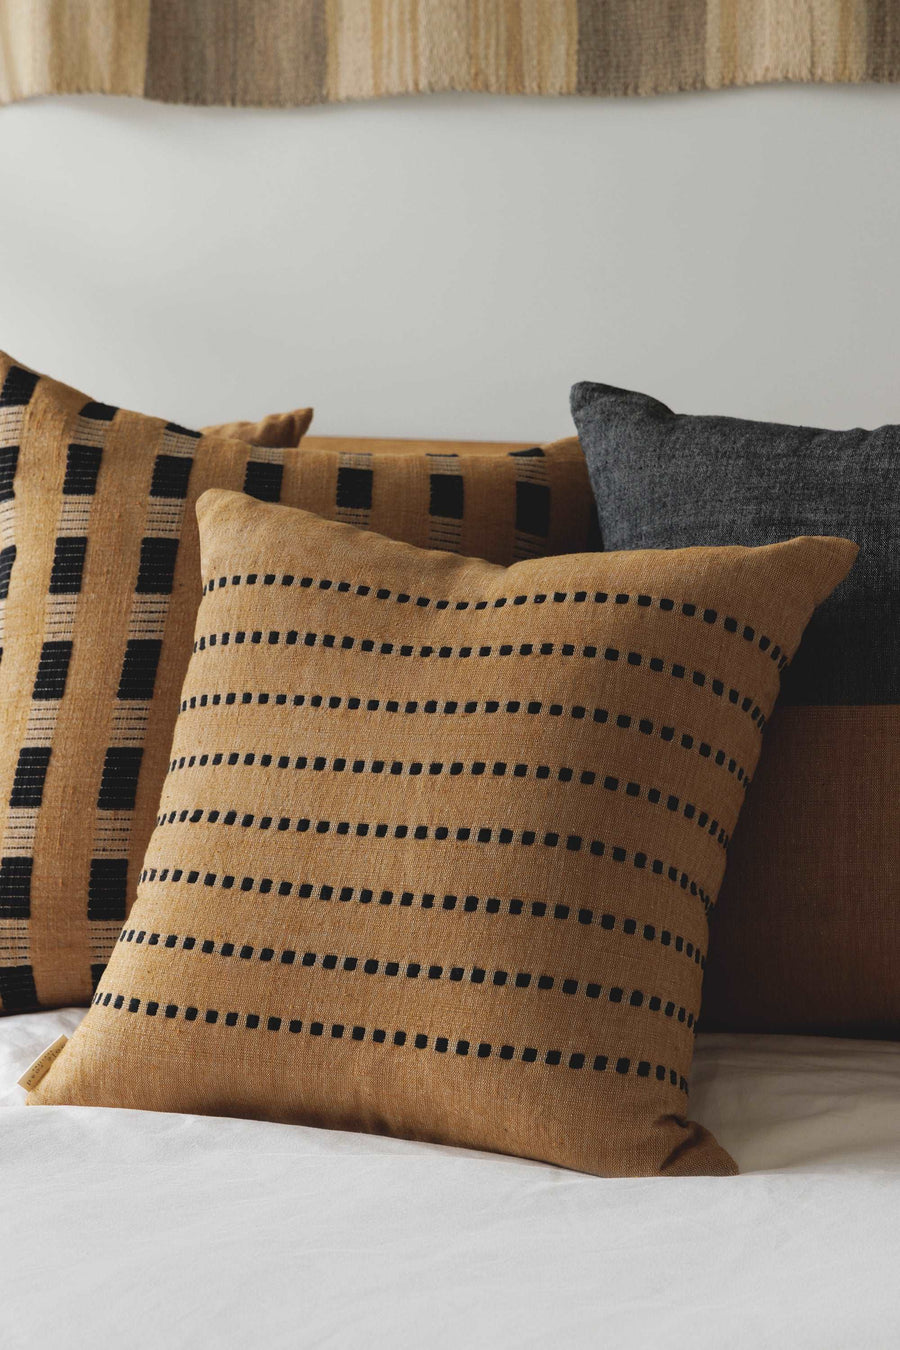 Coordinated Pillows - Tan